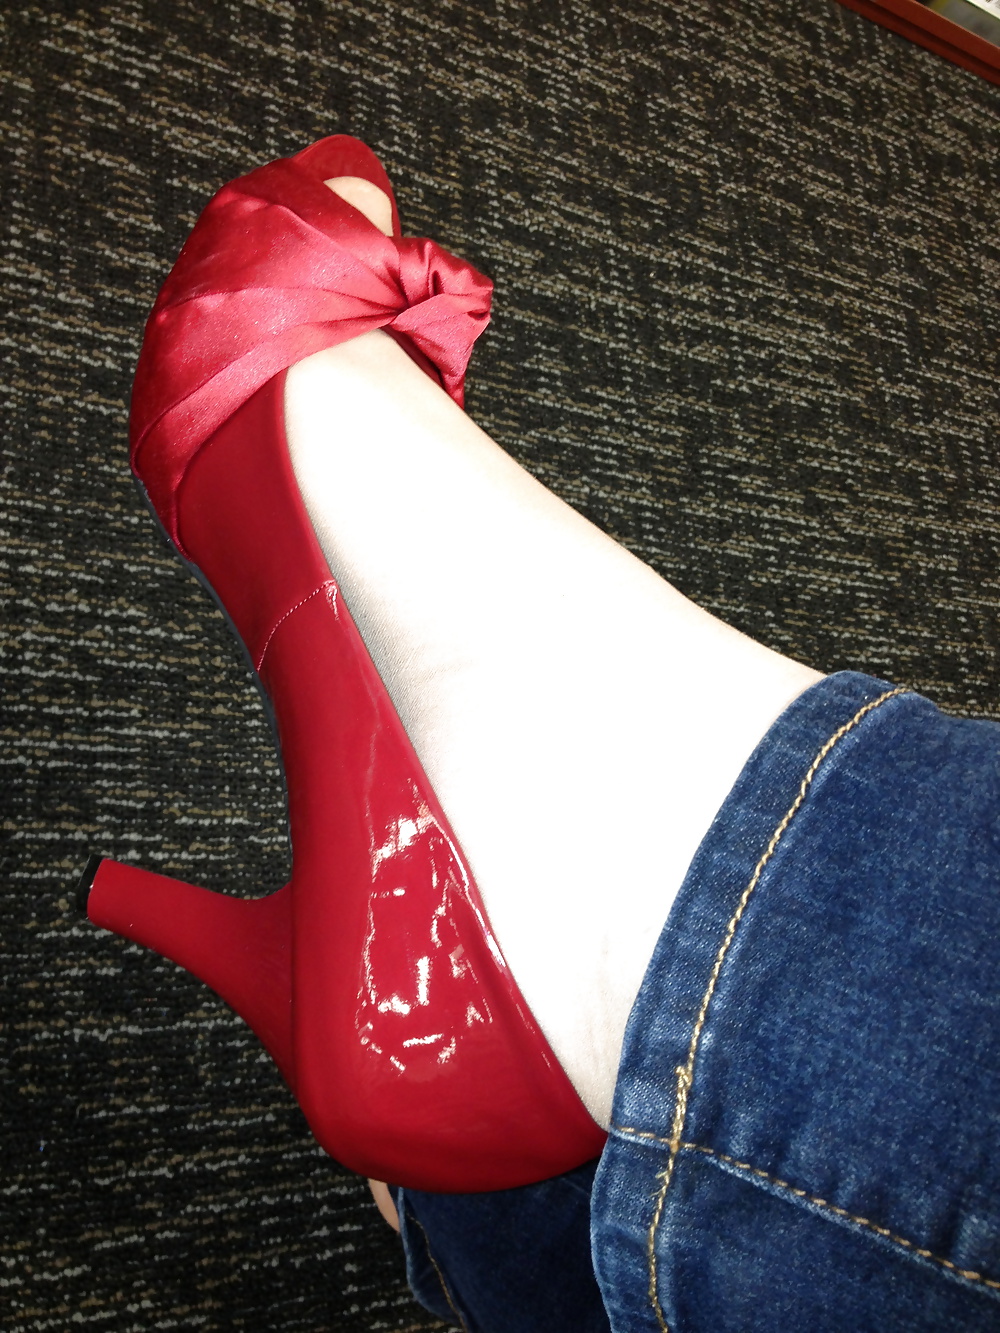 Piedi calzati che provano i tacchi rossi in un negozio di scarpe
 #25674009